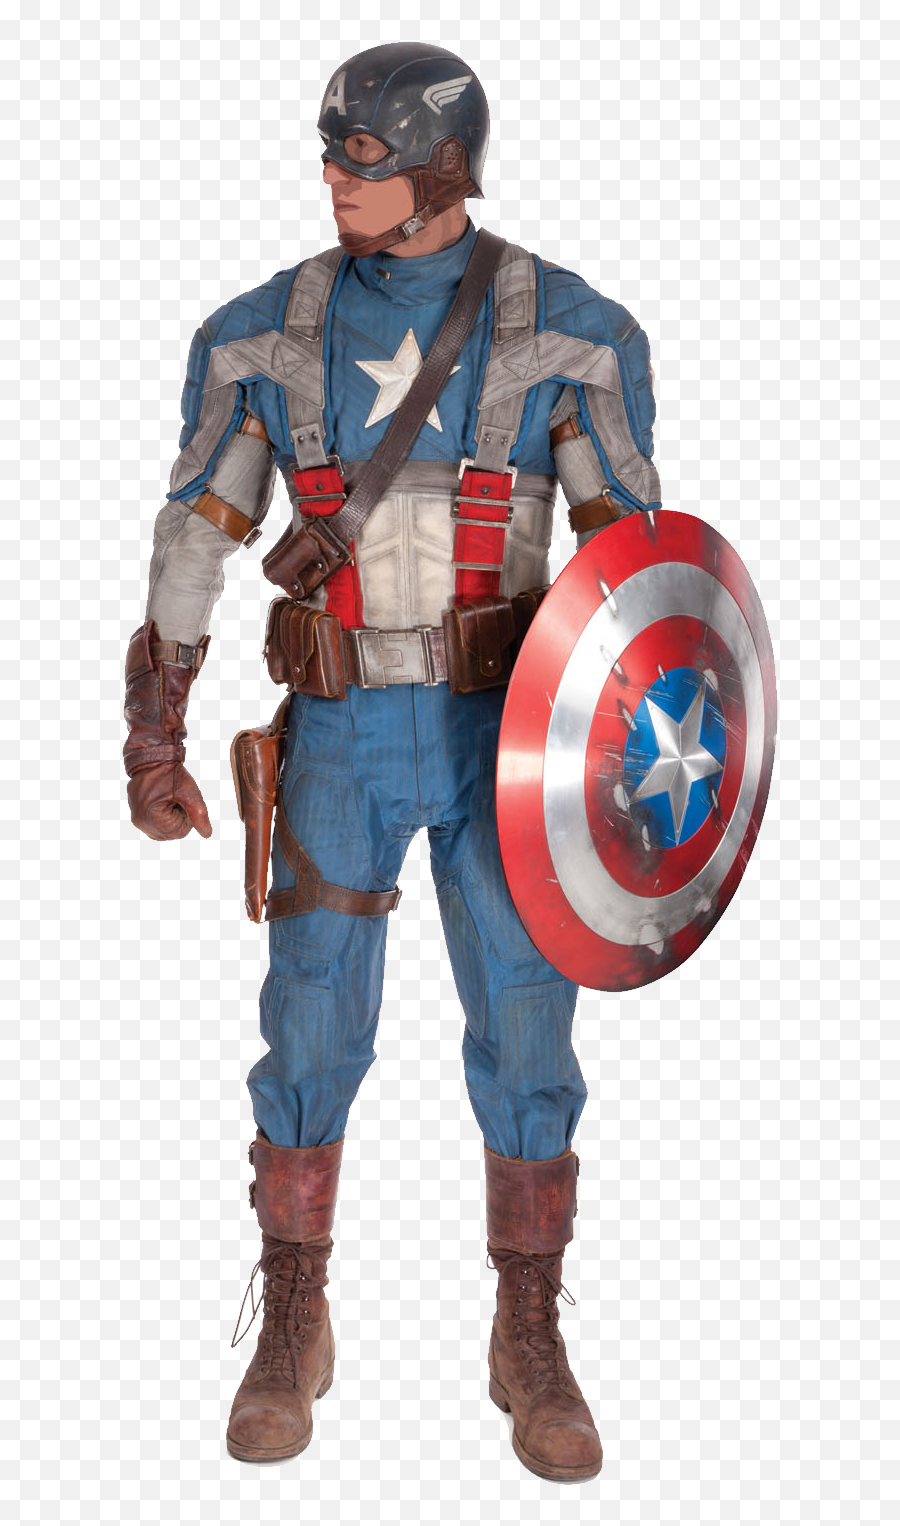 Captain America Png Image - Chris Evans Captain America Png Captain America The First Avenger Captain America,Chris Evans Png